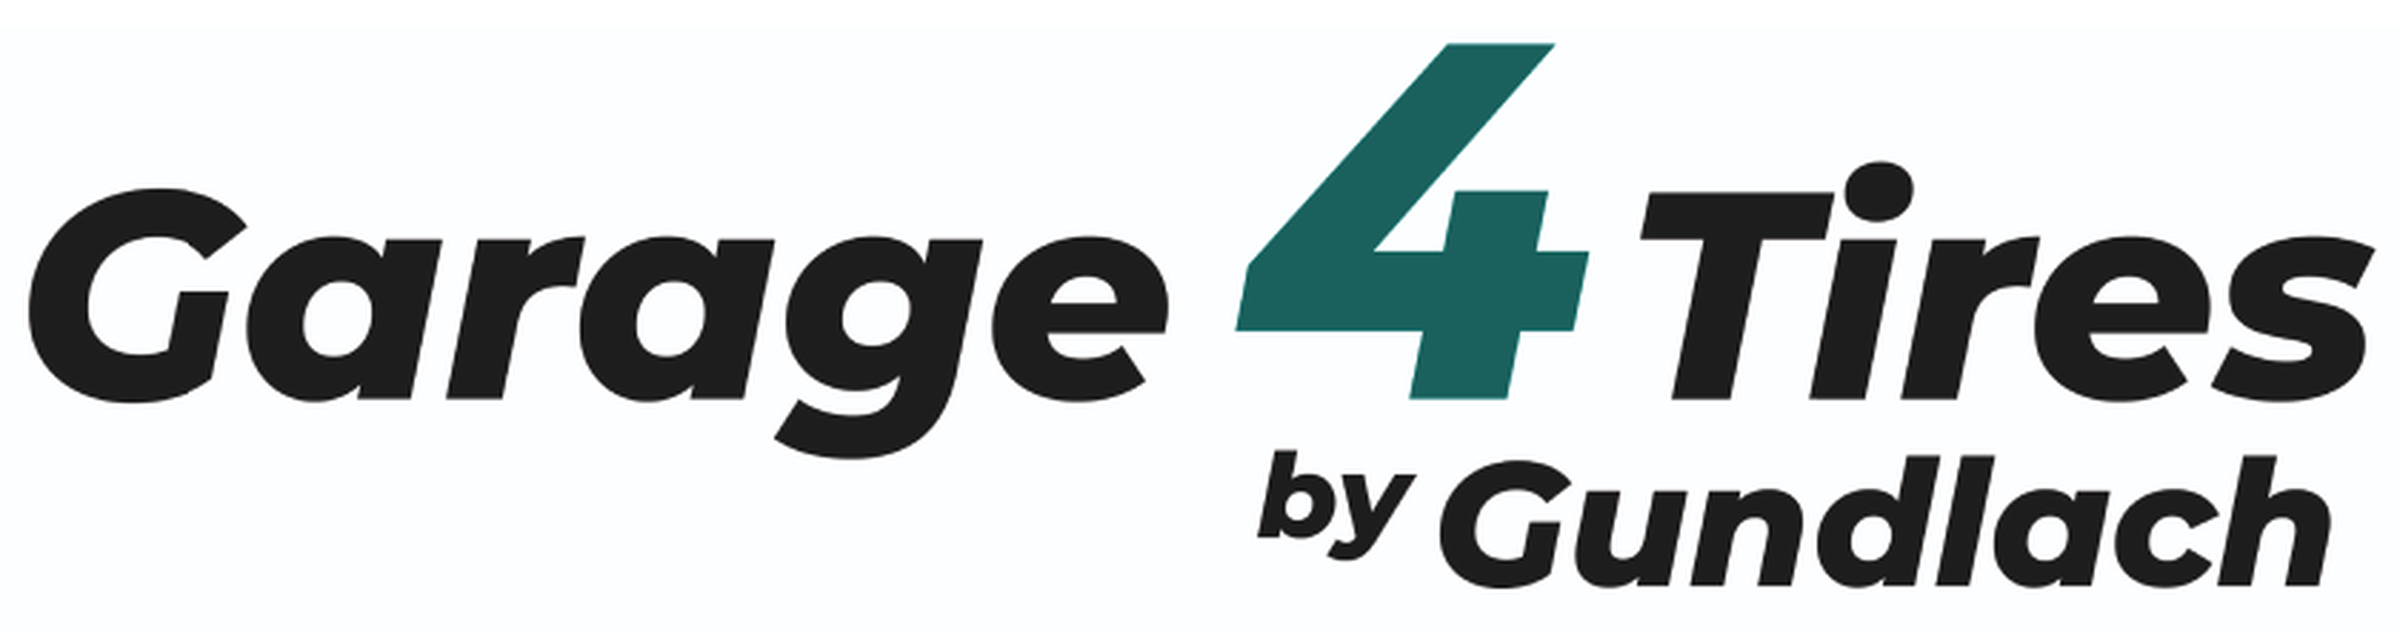 Logo Garage4Tires by Gundlach